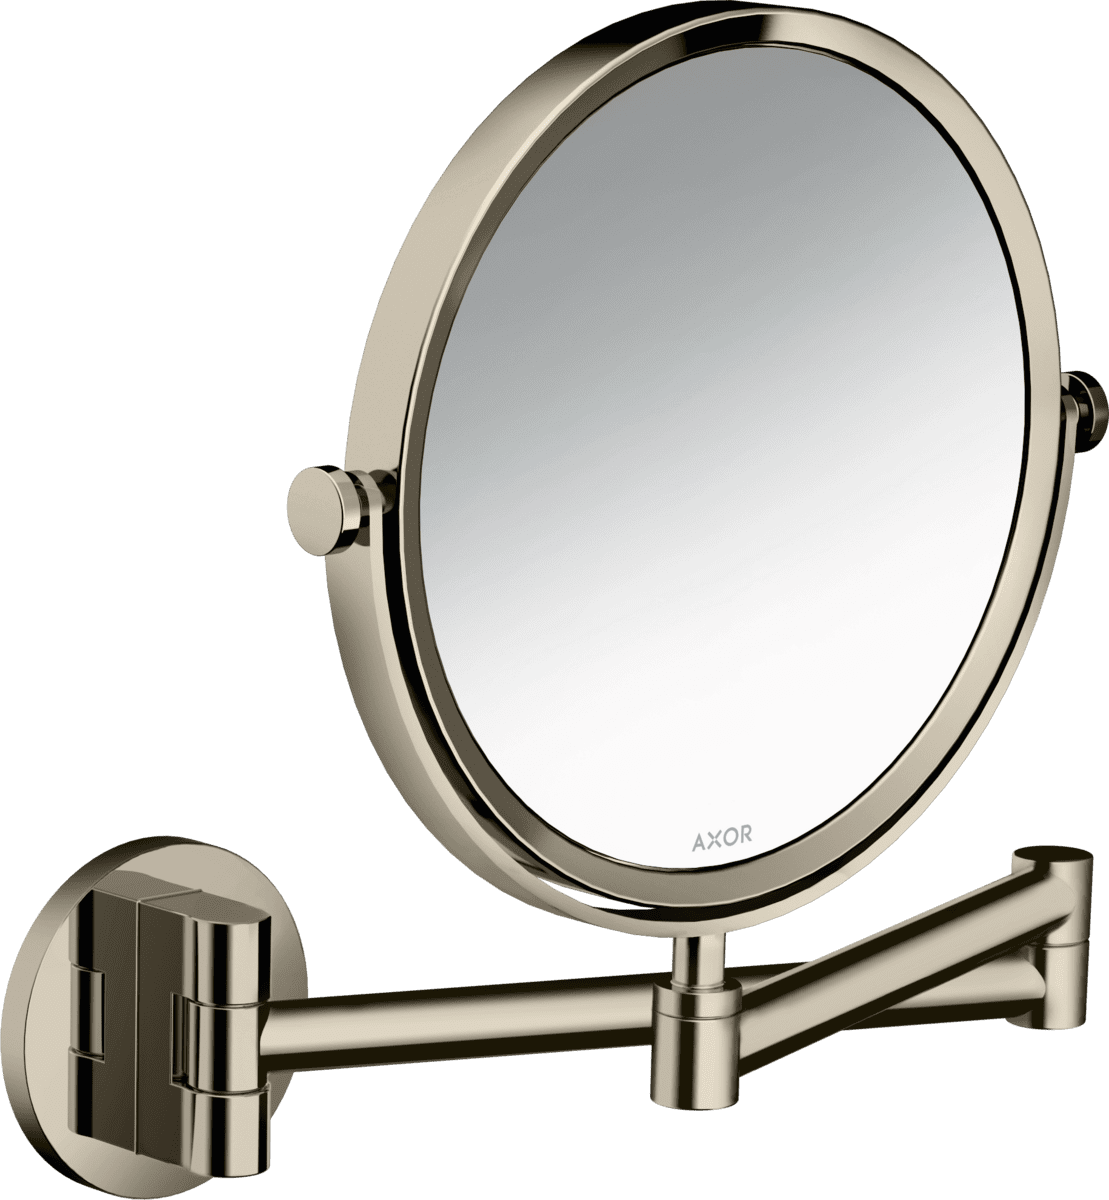 εικόνα του HANSGROHE AXOR Universal Circular Shaving mirror #42849830 - Polished Nickel